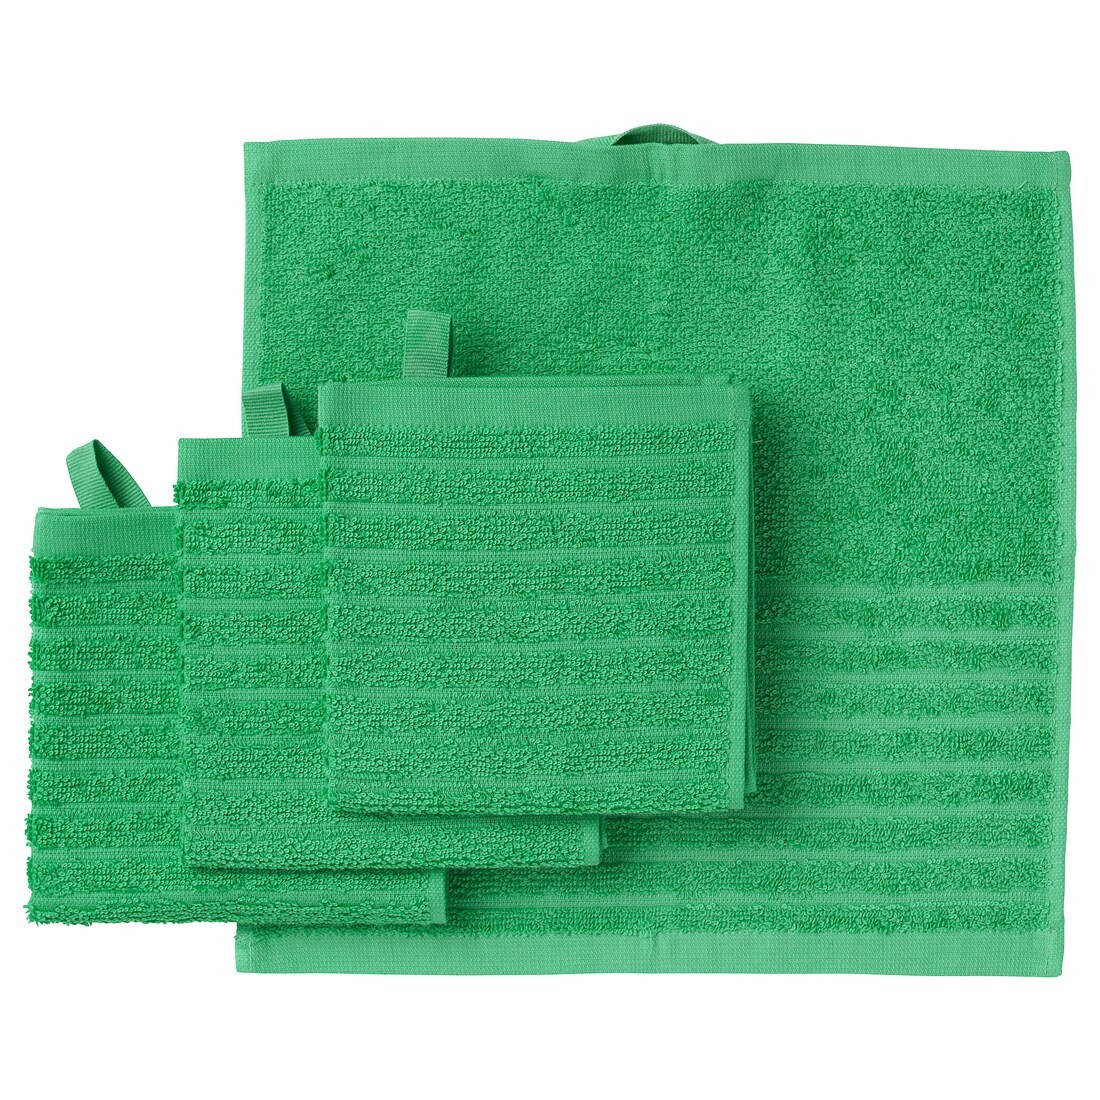 VÅGSJÖN Полотенце, ярко-зеленый, 30x30 см